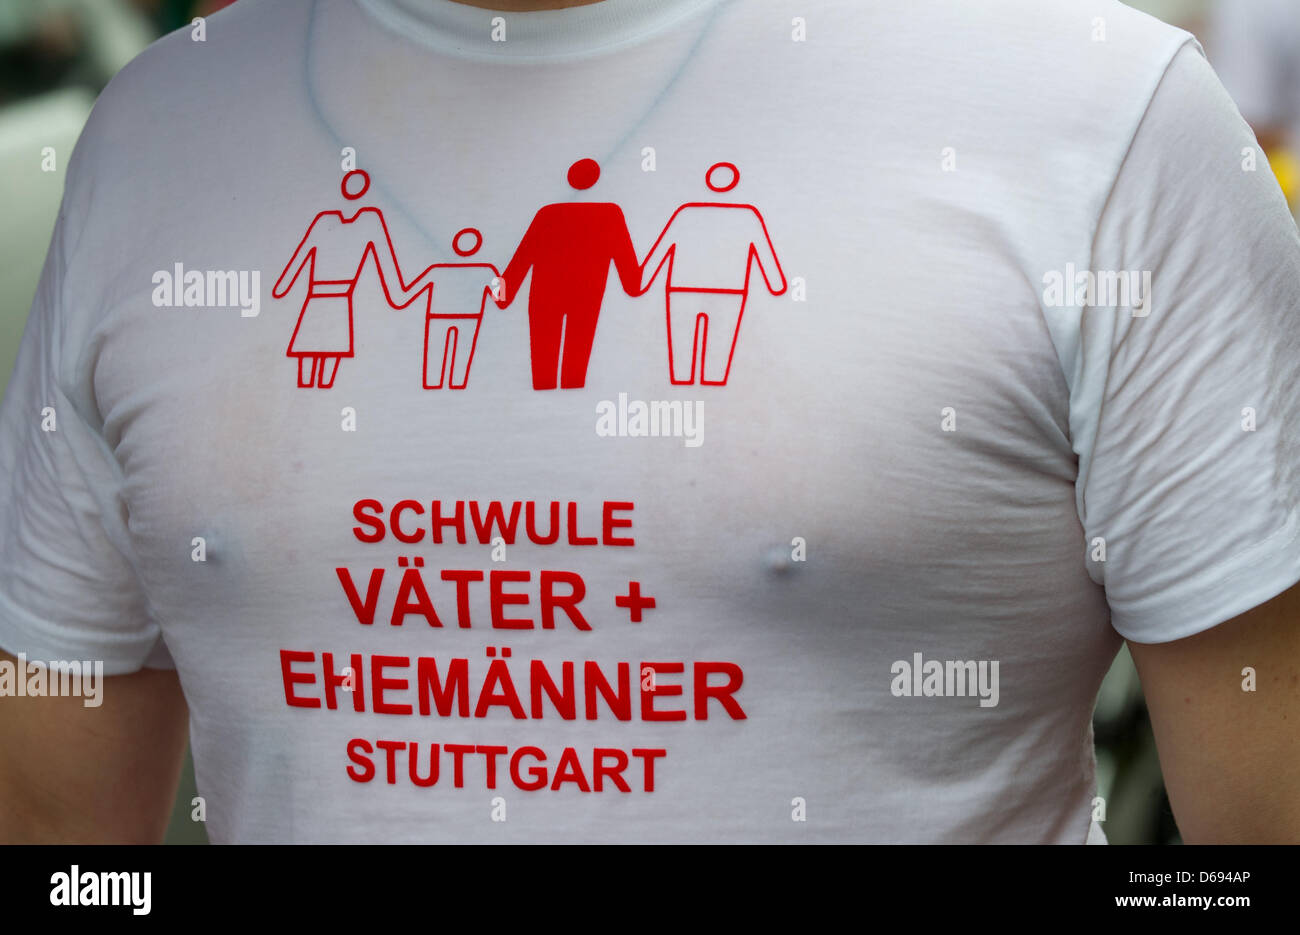 Eine Person Paraden durch die Innenstadt von Stuttgart trägt ein T-shirt Woth den Schriftzug "Gay Väter + Ehemänner", Christopher Street Day (CSD) wi, Deutschland, 28. Juli 2012 zu feiern. Die Demonstration für die Rechte der LGBTIQ Peole fand unter dem Motto "Gleiche Arbeit - Lesben und Schwule aus dem Schrank". Foto: MARIJAN MURAT Stockfoto